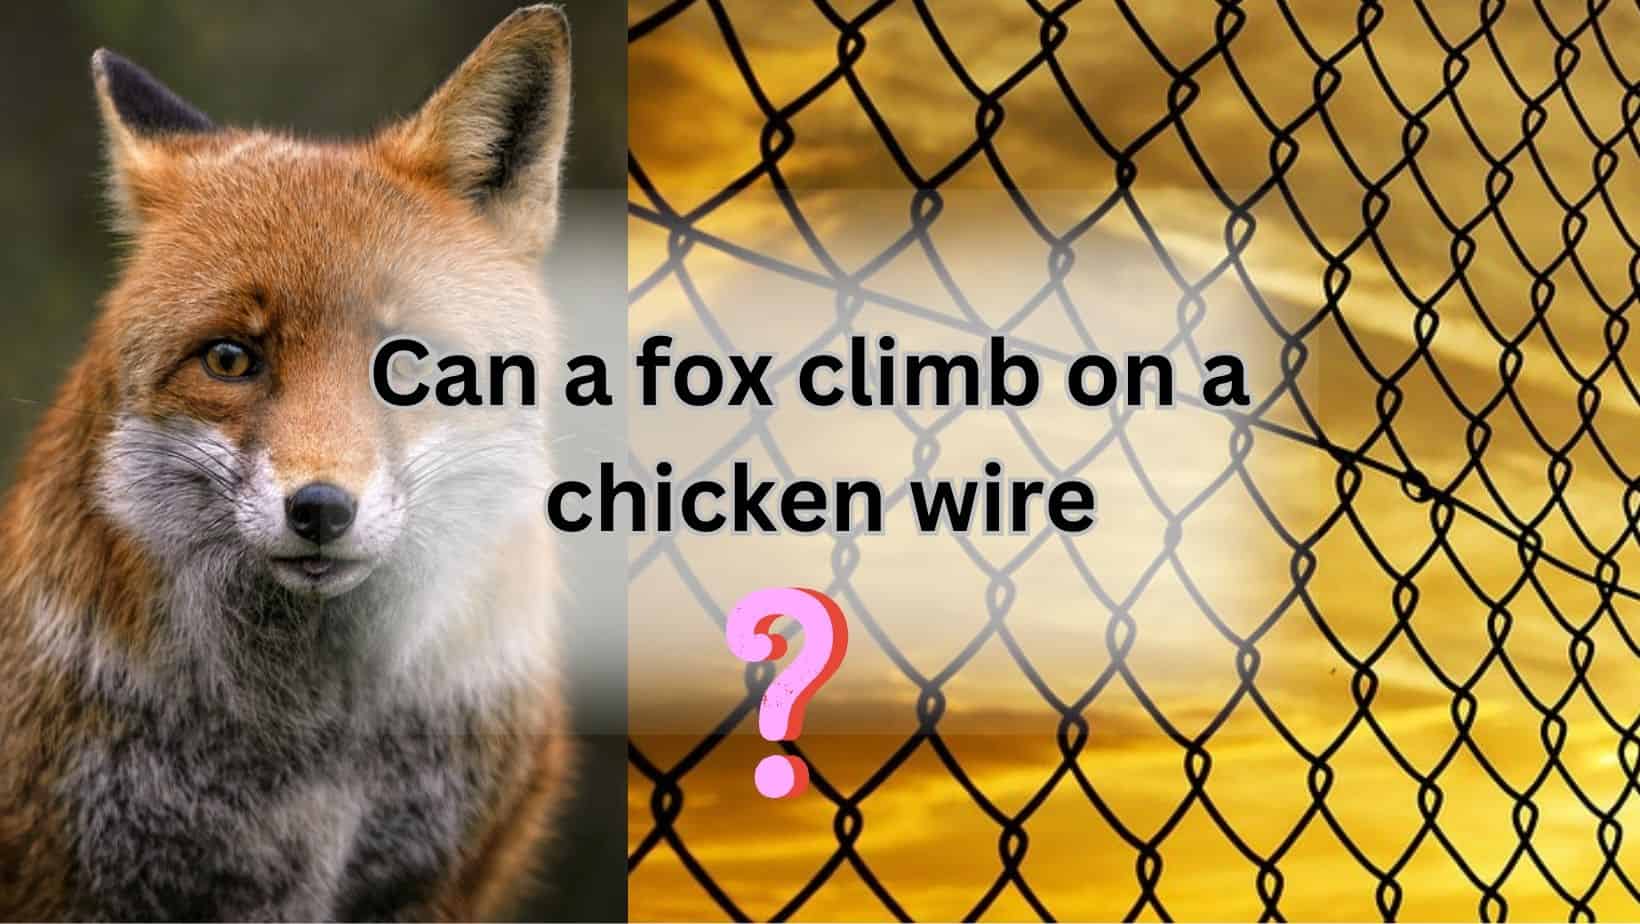 Fox climb on chicken wire